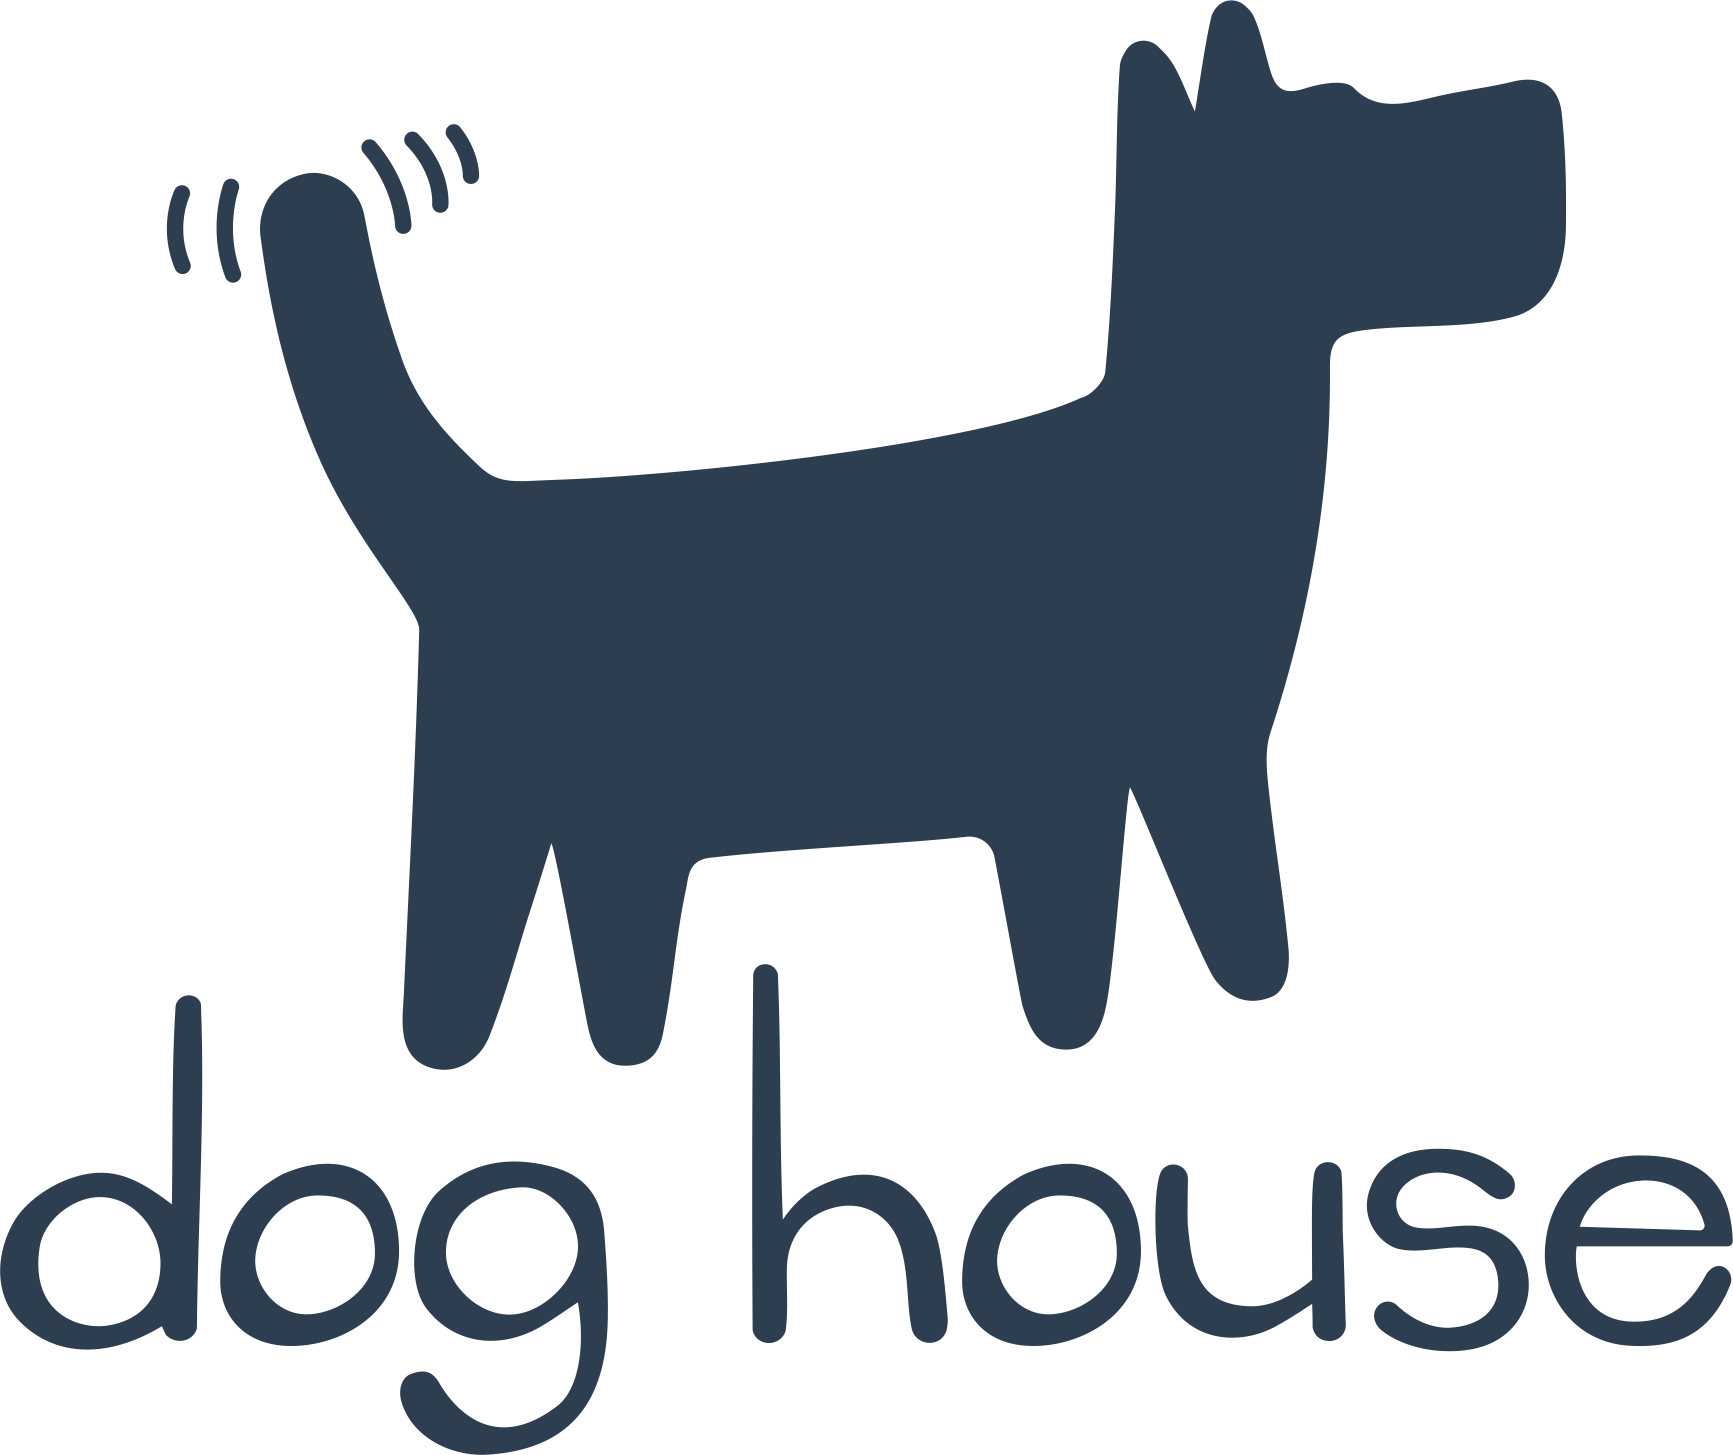 Демо версия дог хаус dog houses info. Хаус собак. Логотип Dog House. Логотип для хауса собак. Авы для дог хаусов.